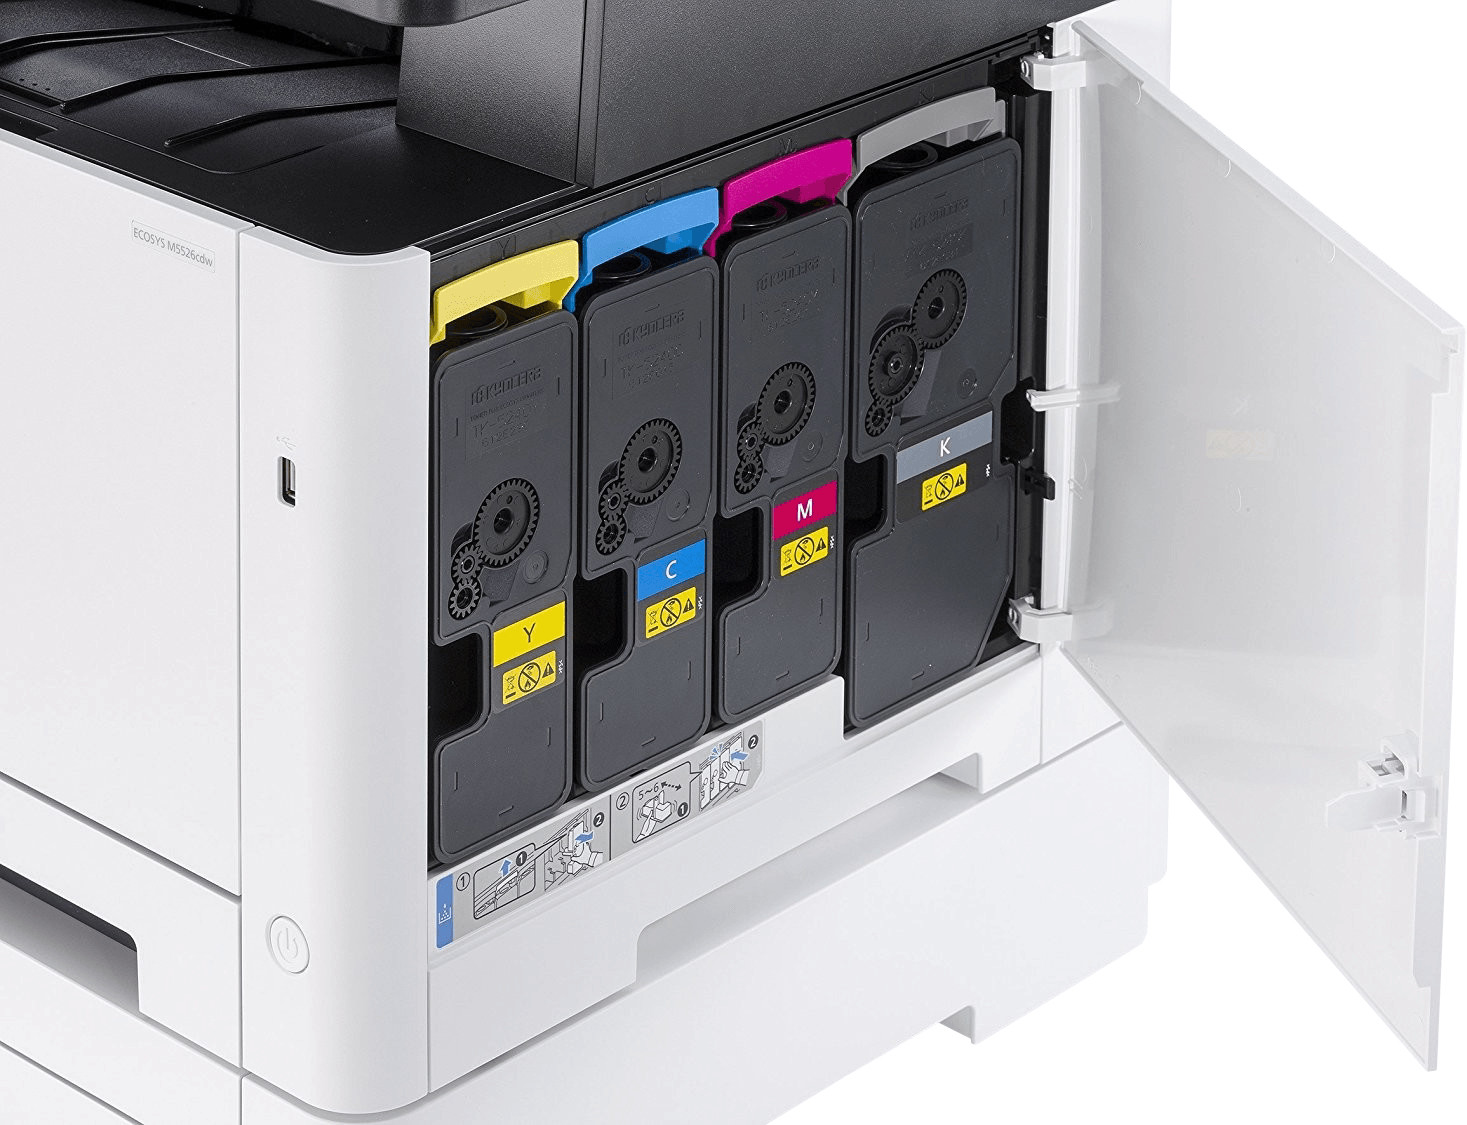 Kyocera ECOSYS M5526cdnA (Farb-Laser MFP) ohne Fax und W-Lan